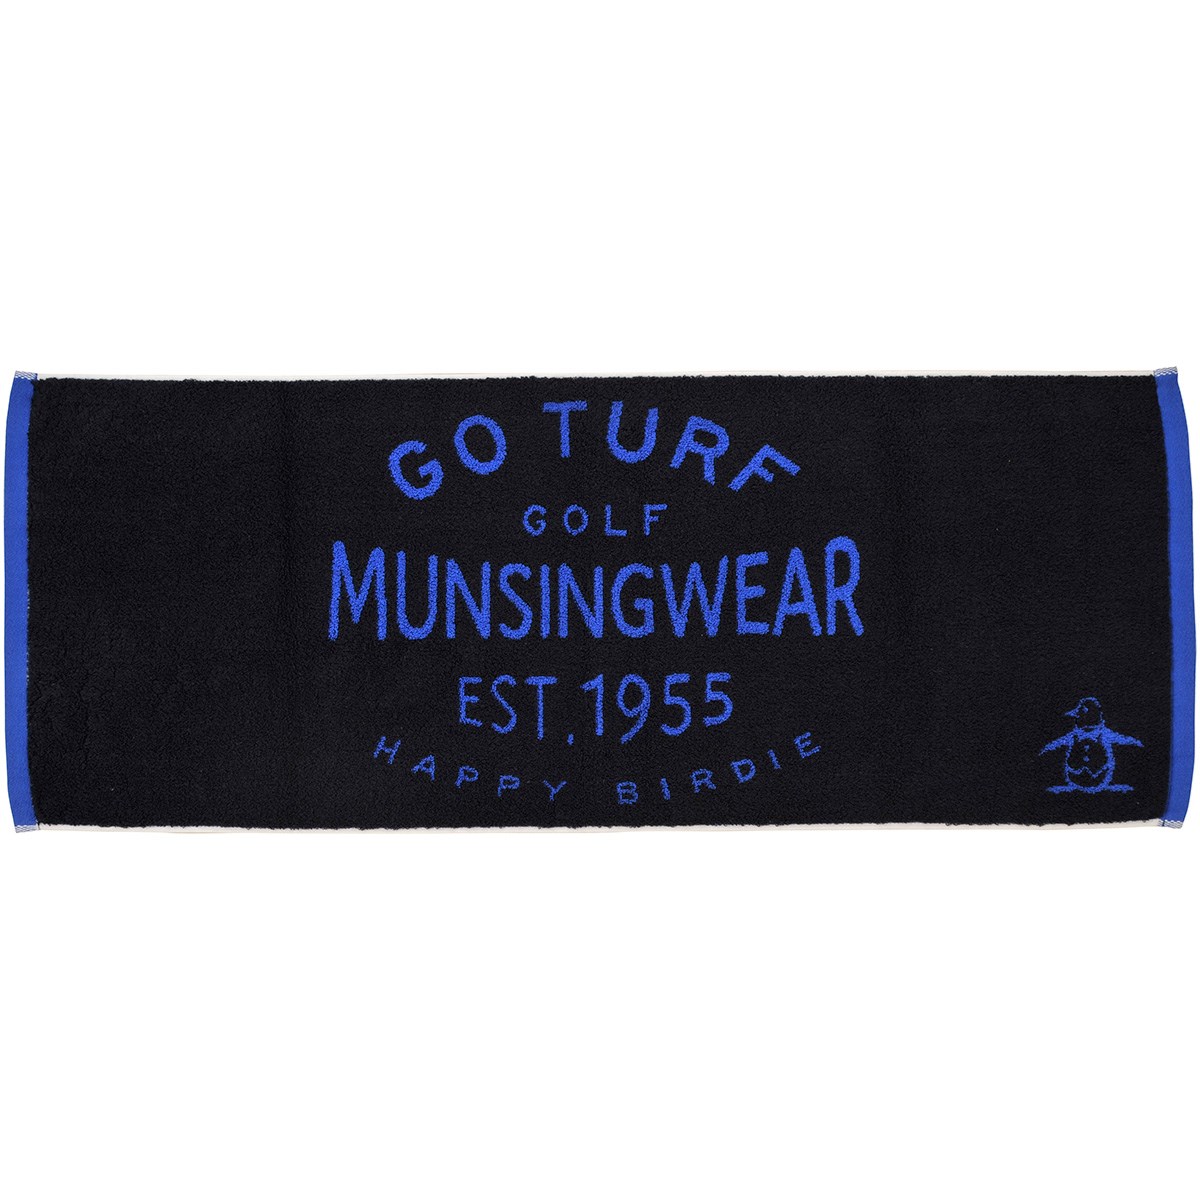 マンシングウェア Munsingwear ゴルフタオル ネイビー 00